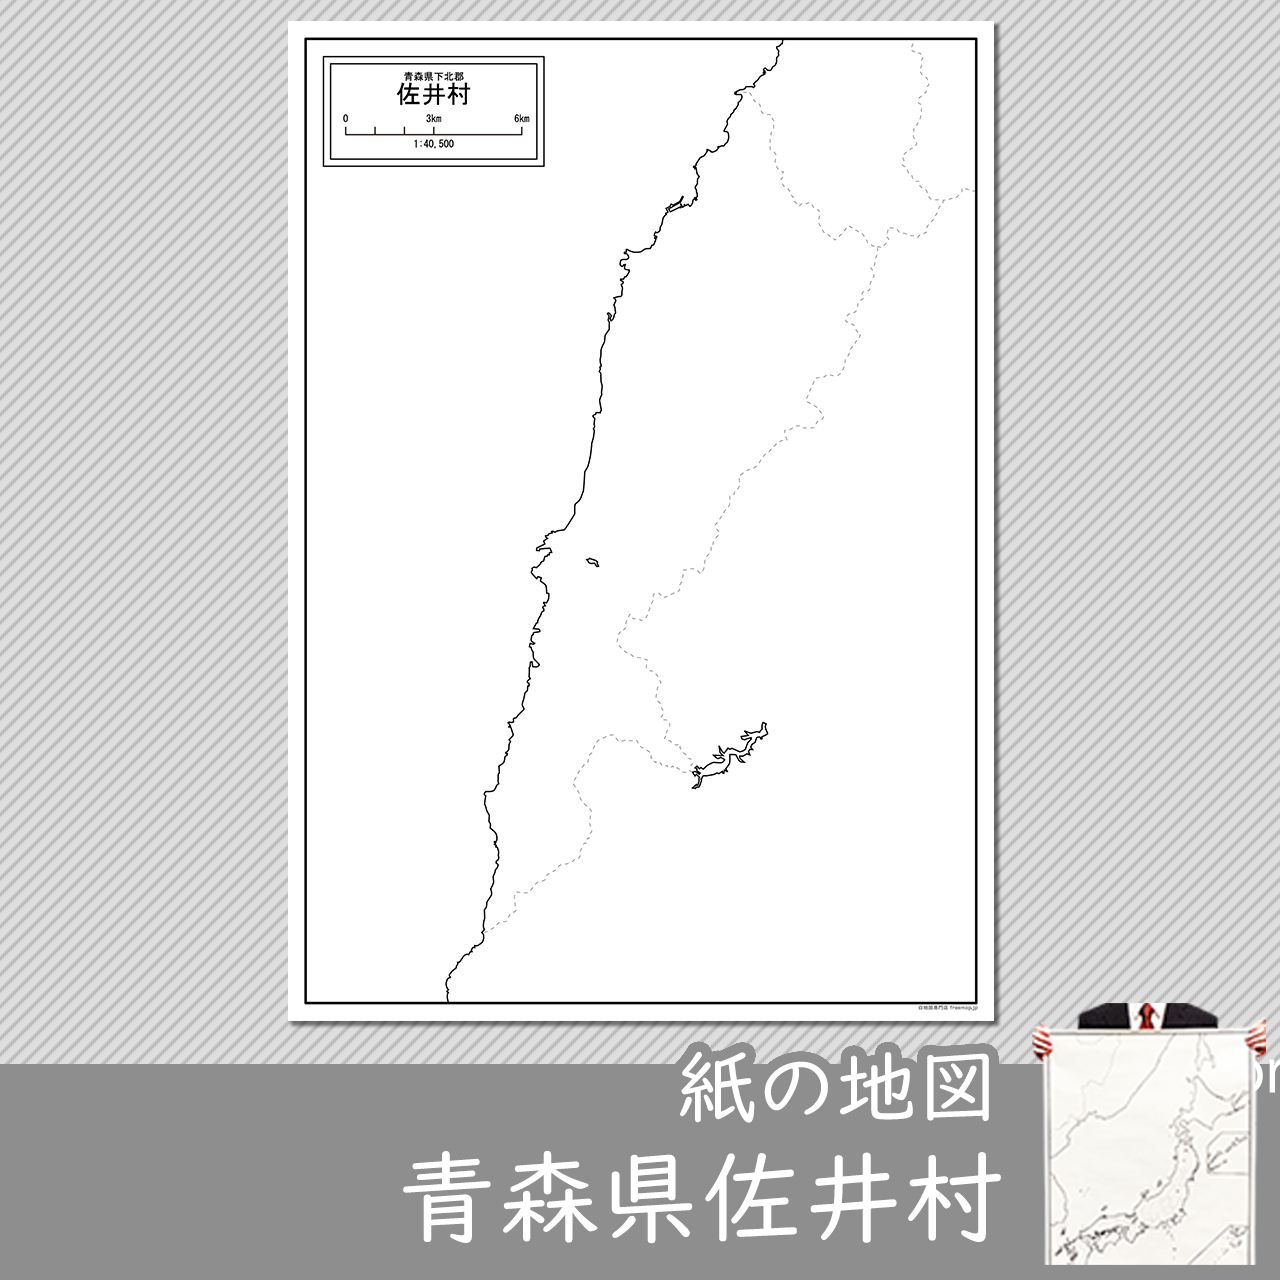 佐井村の紙の白地図のサムネイル